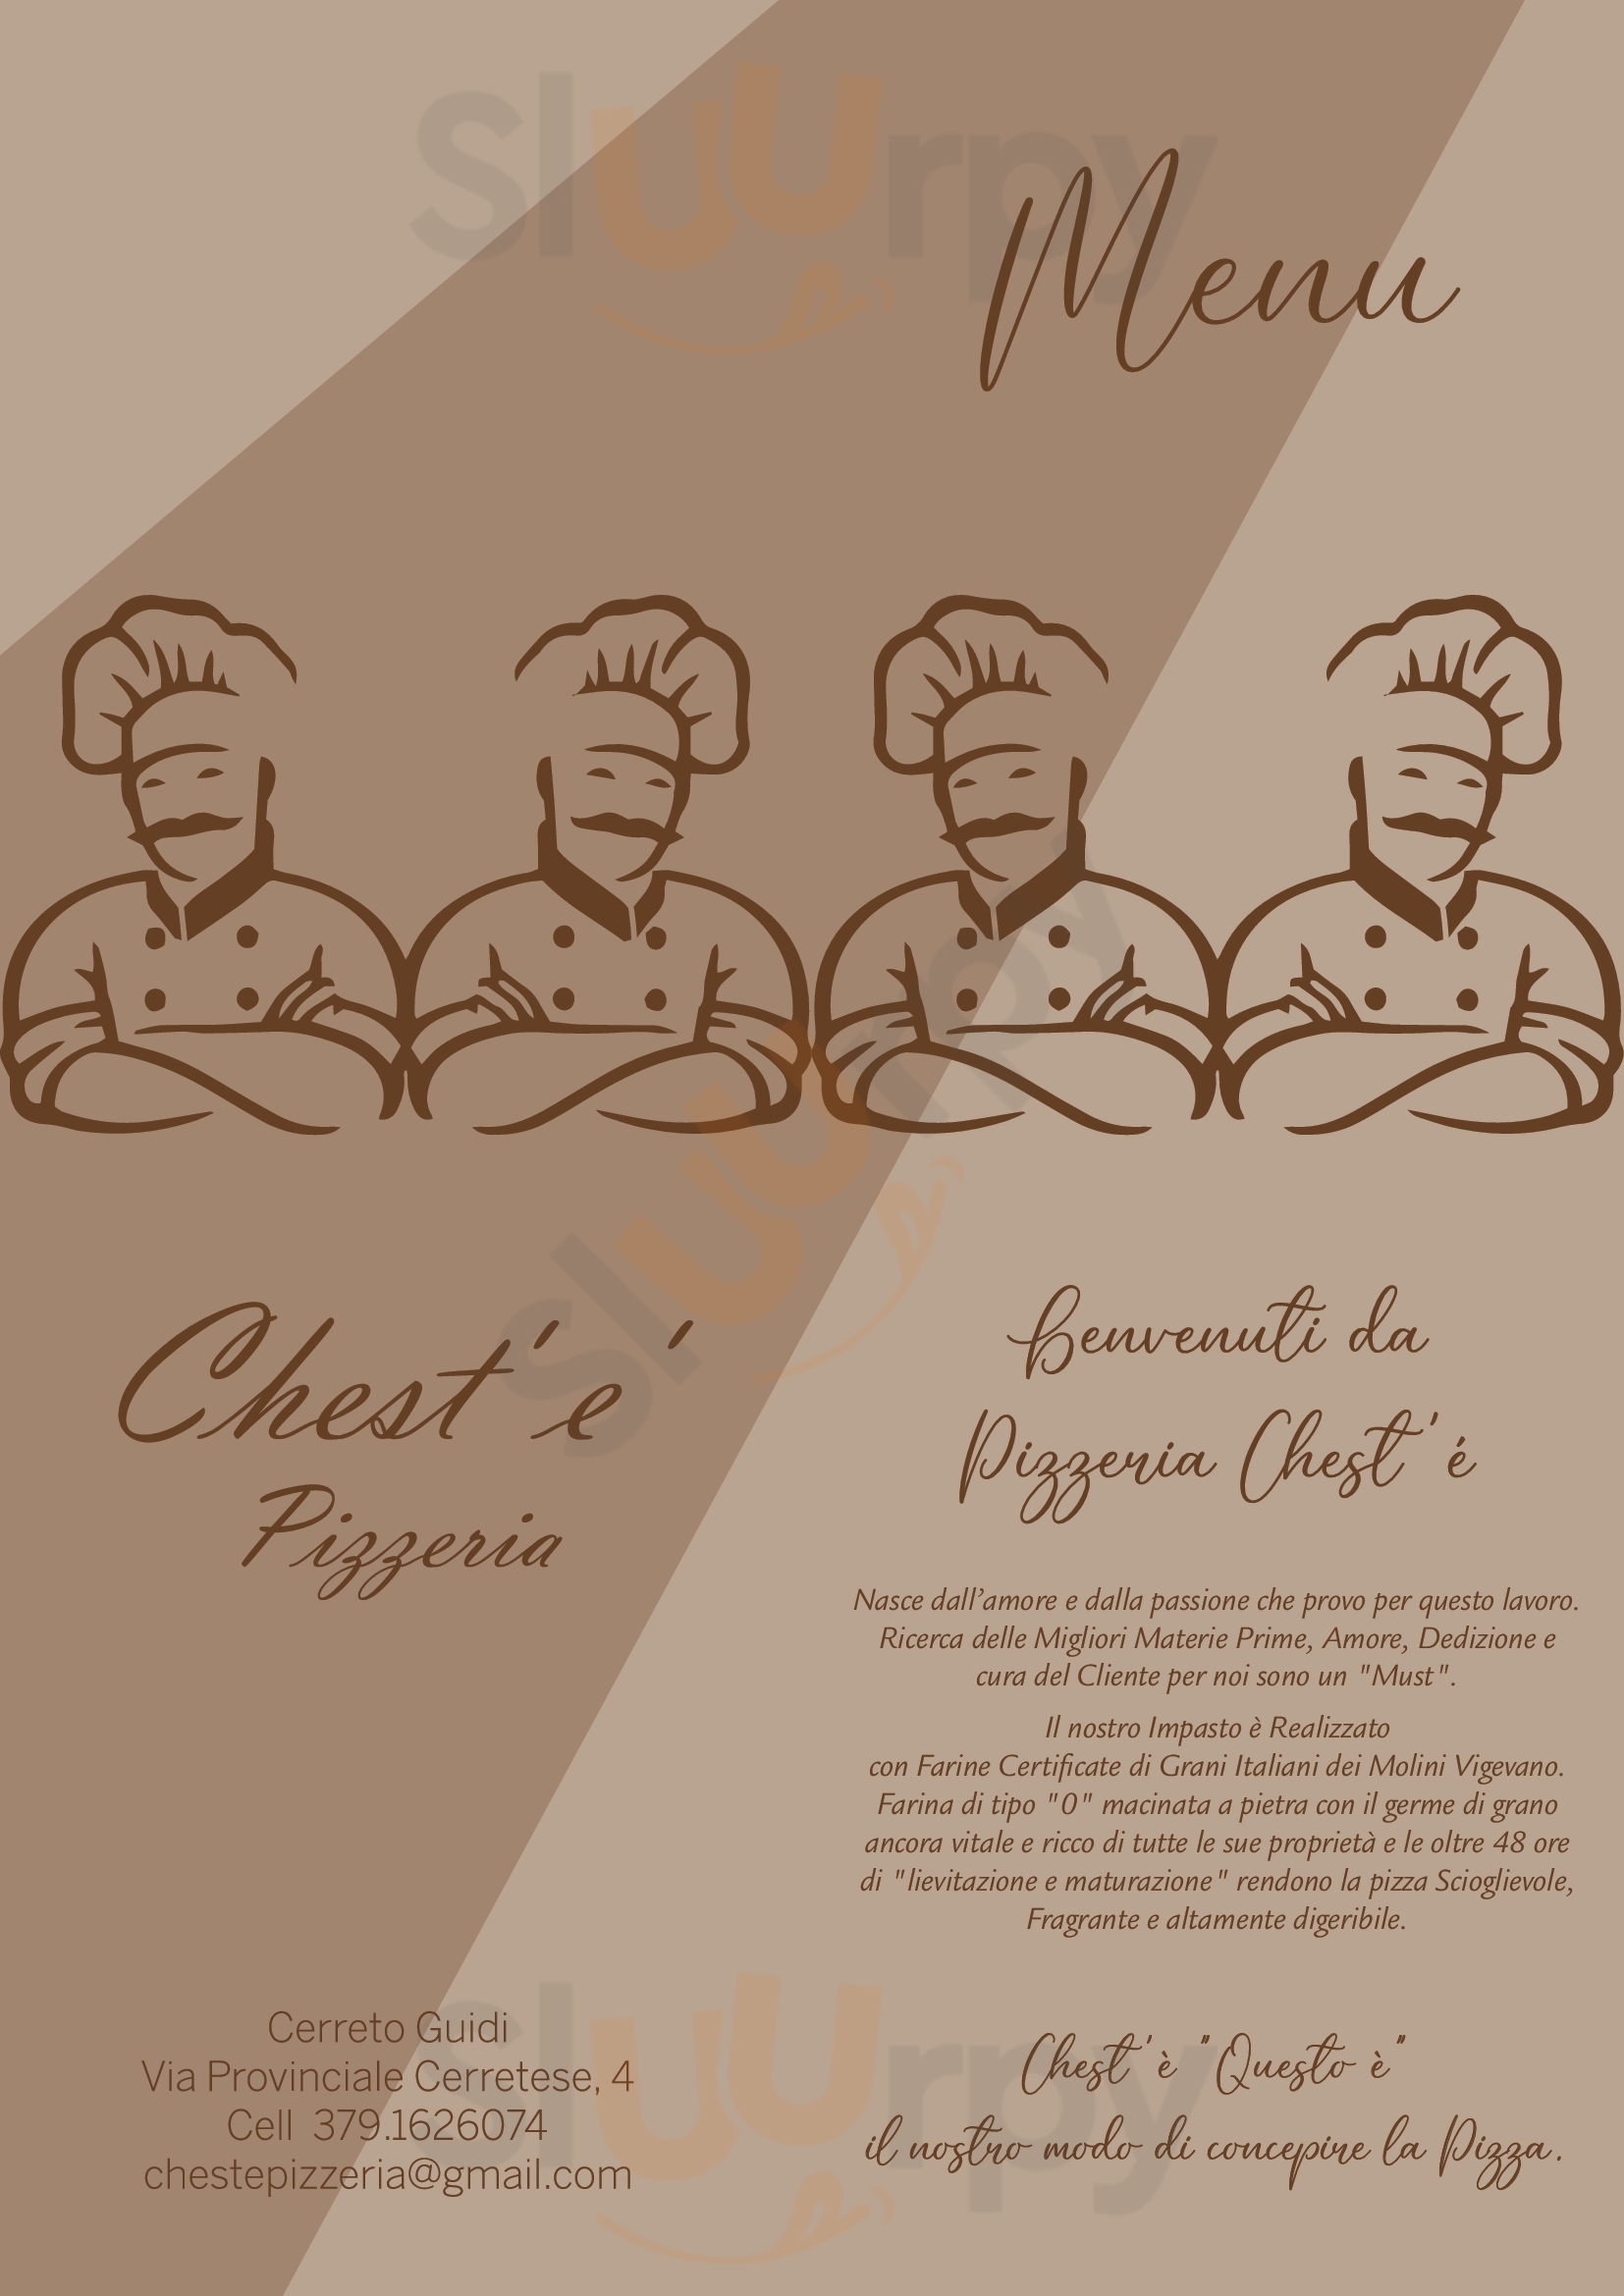 Pizzeria Chest' E' Cerreto Guidi menù 1 pagina